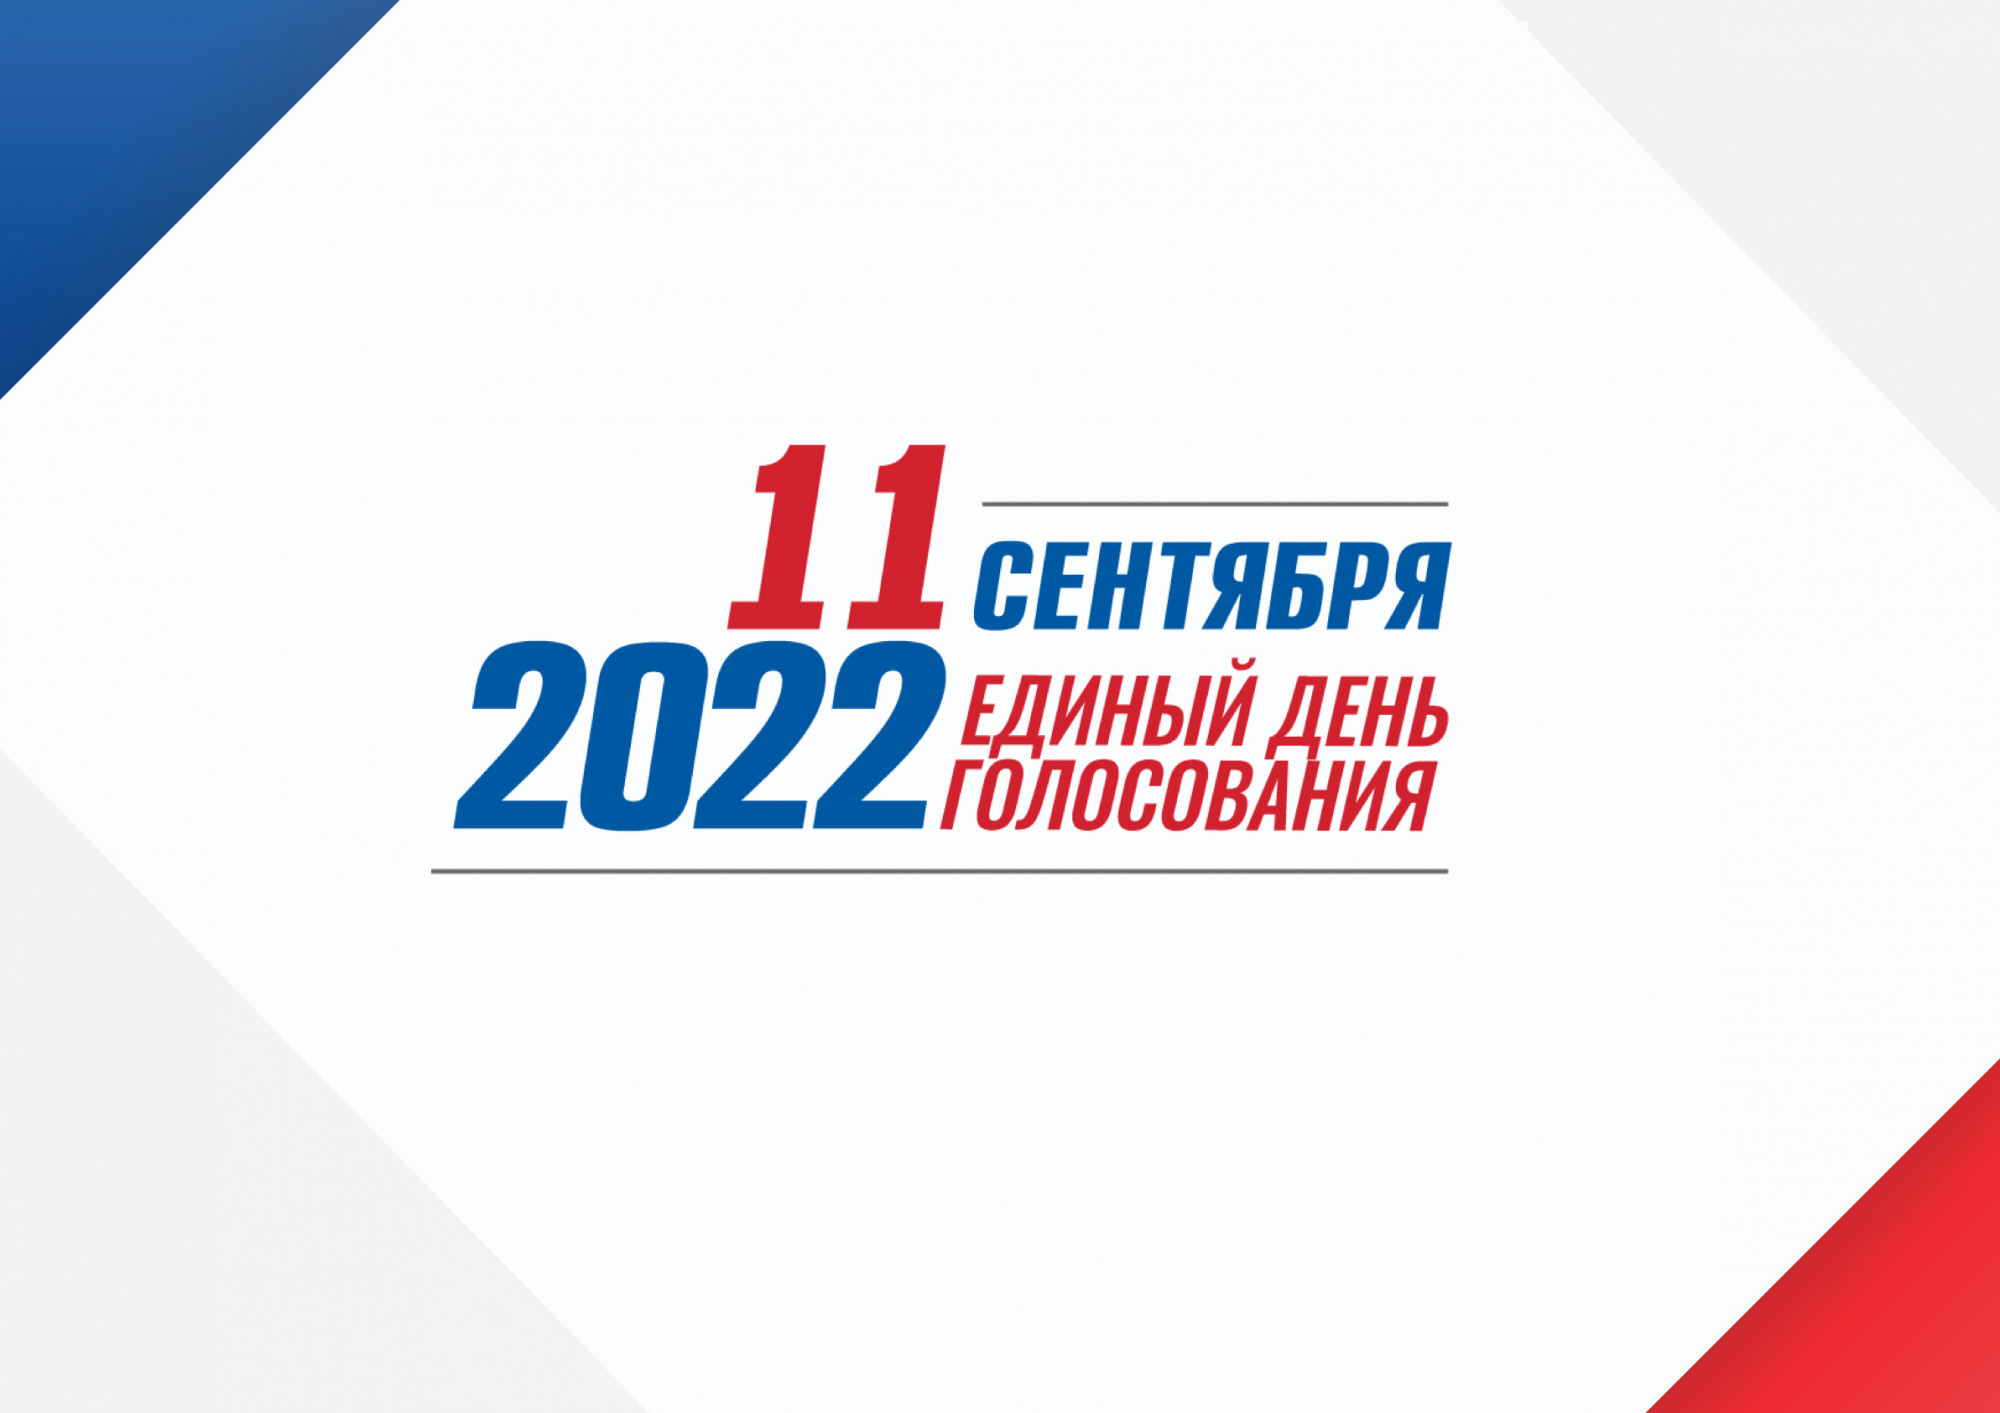 Выборы 11 б. Выборы 2022. Единый день голосования 2022. Выборы 2022 единый день голосования. 11 Сентября единый день голосования 2022.